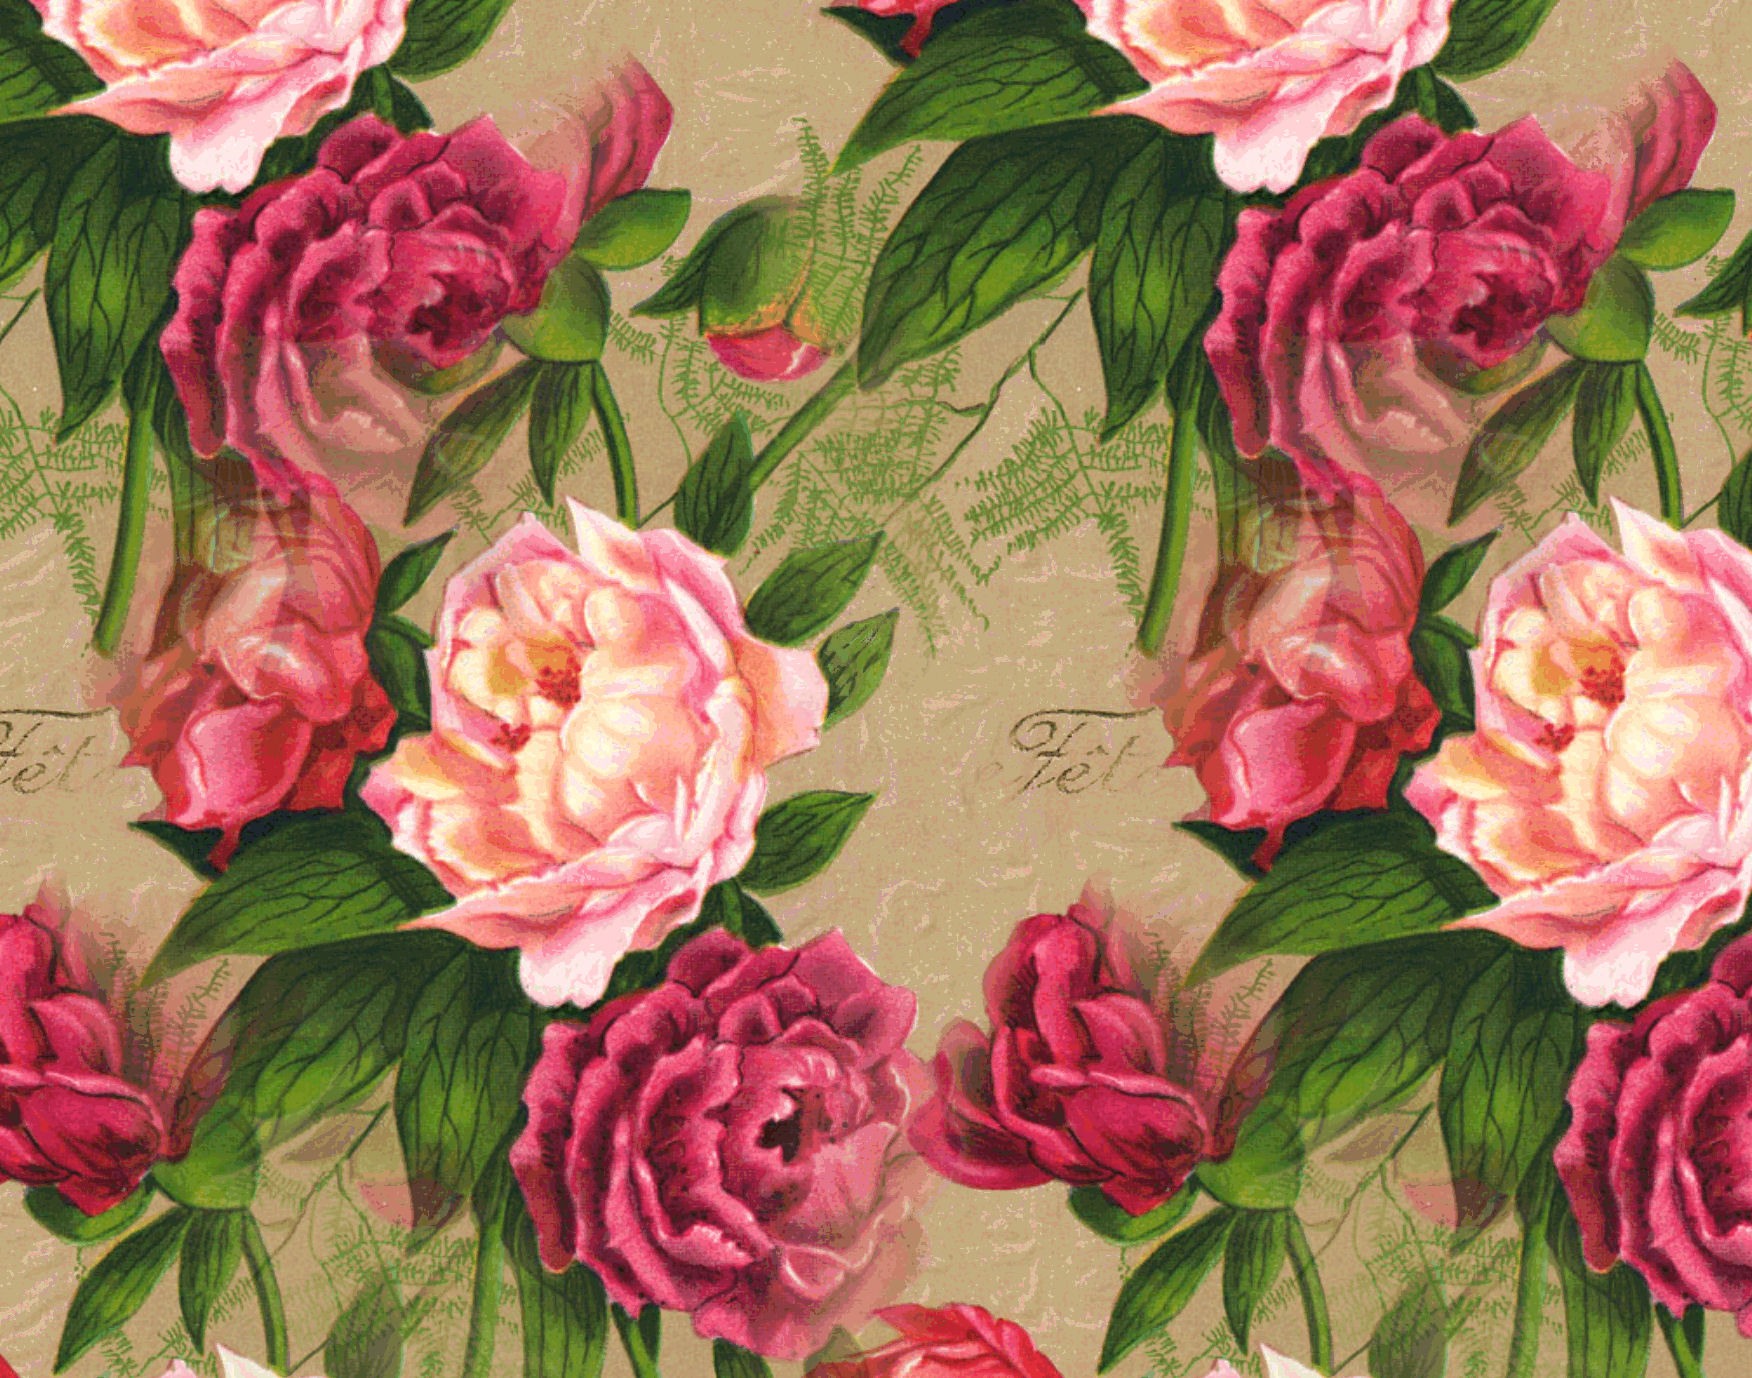 Vintage Roses Image Desktop Background